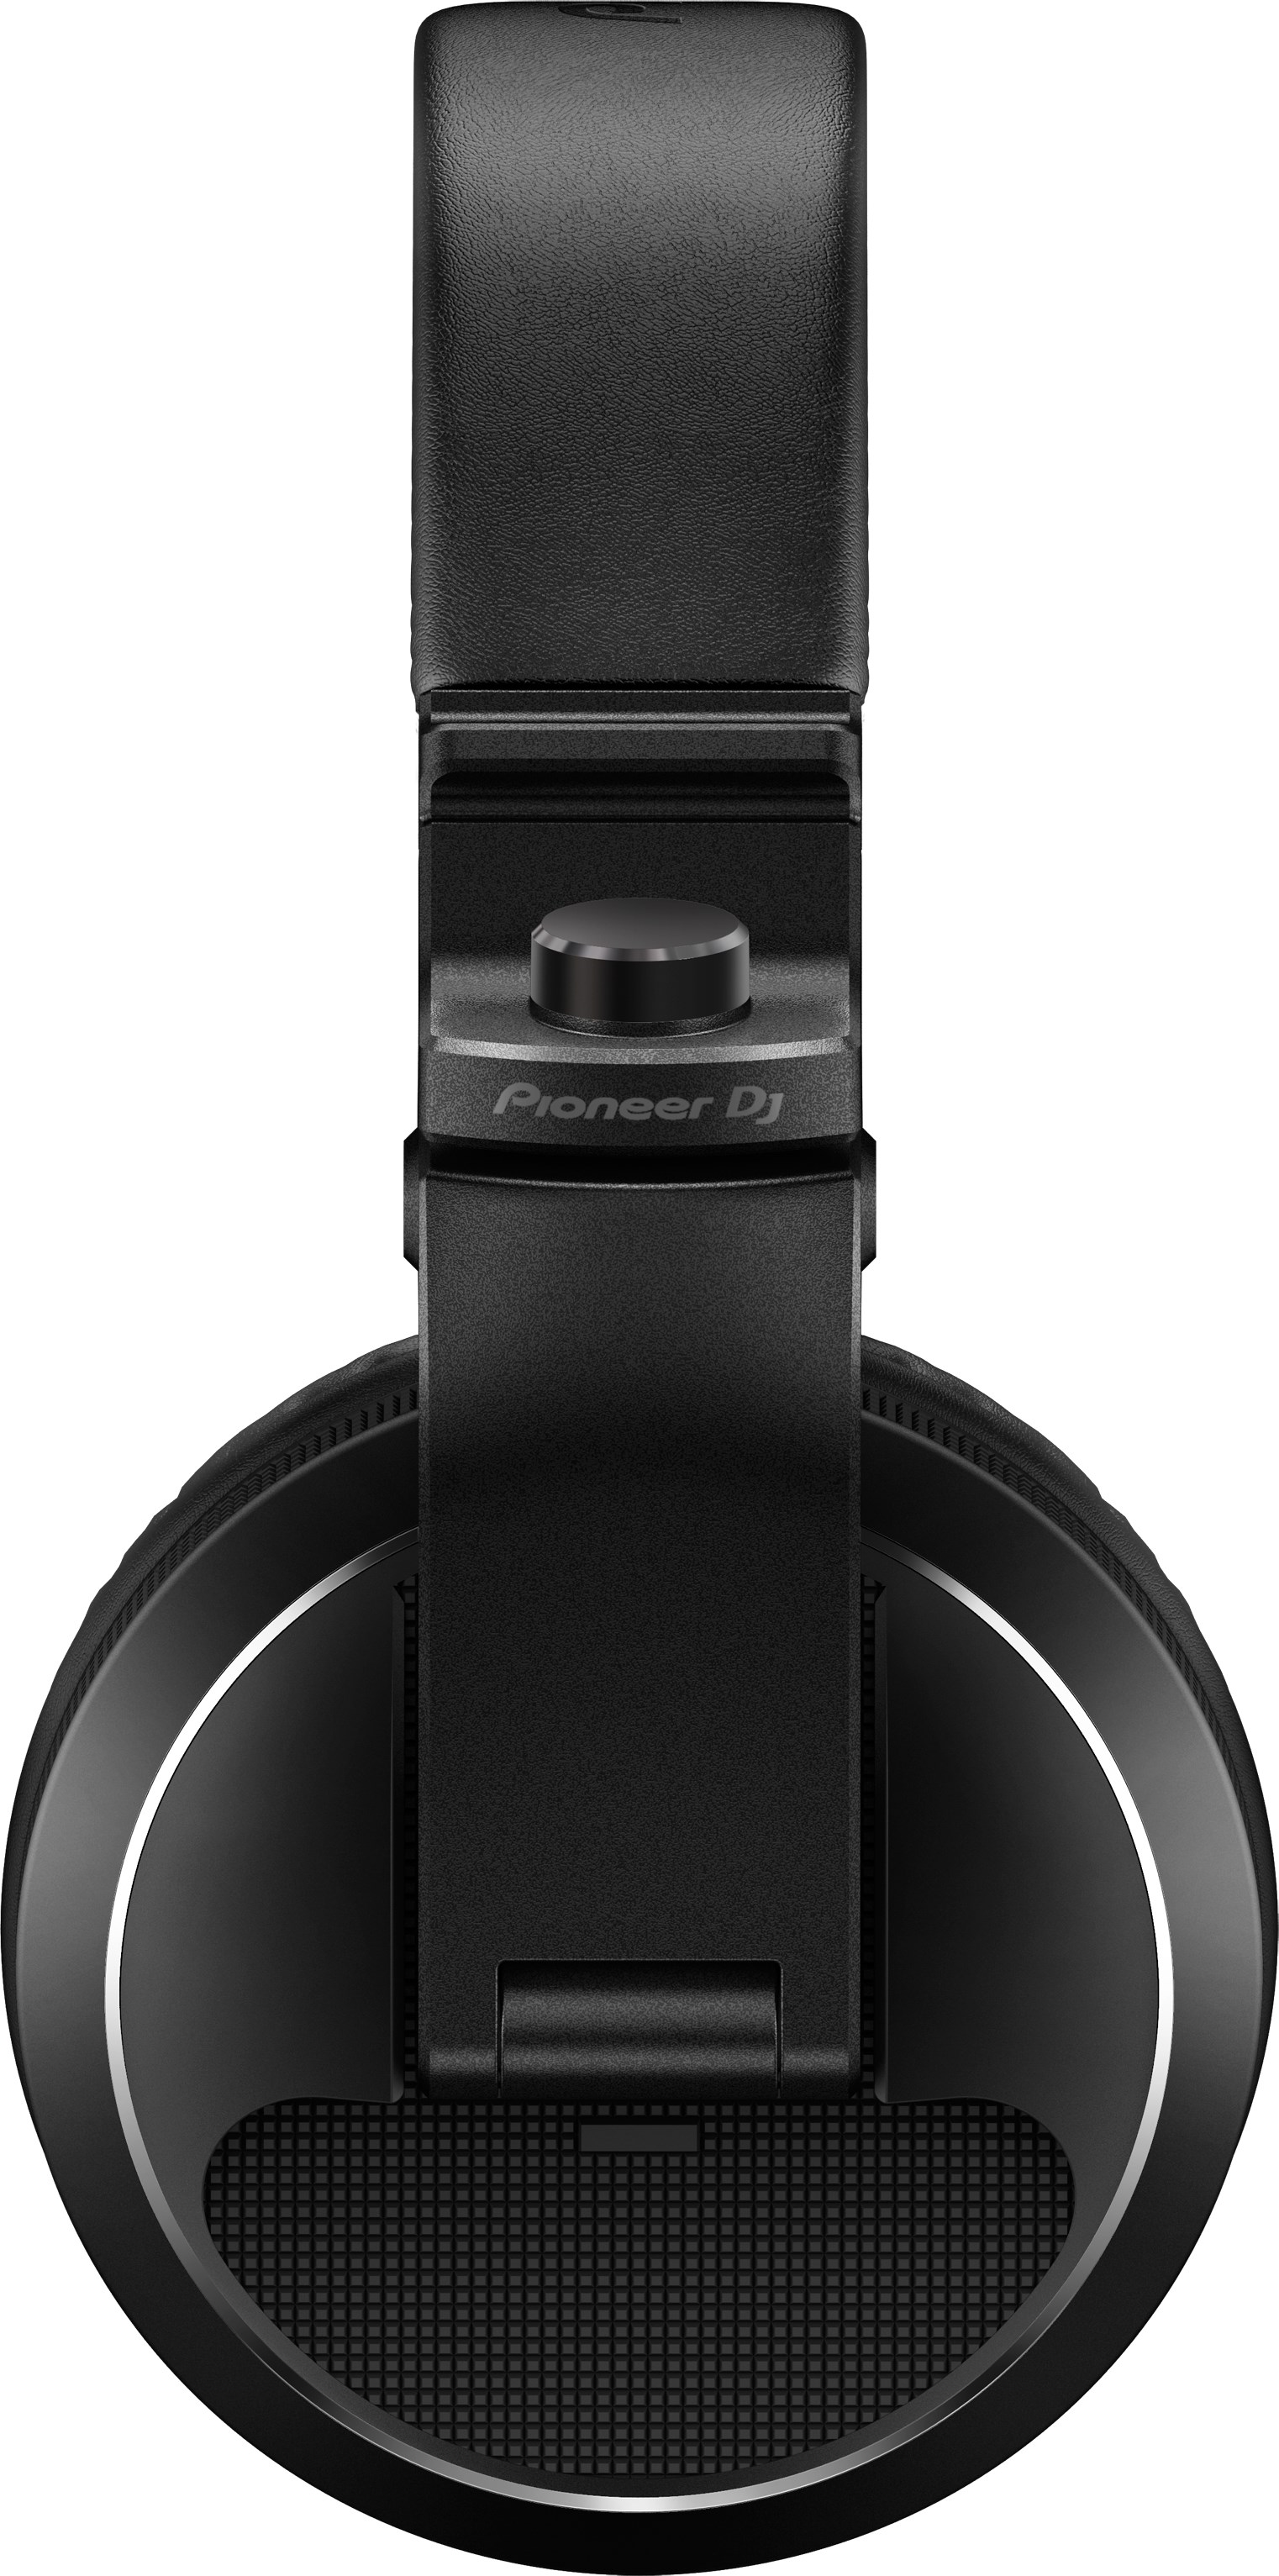 Headphones Black HDJ-X5-K cheap LTT - DJ Pioneer at